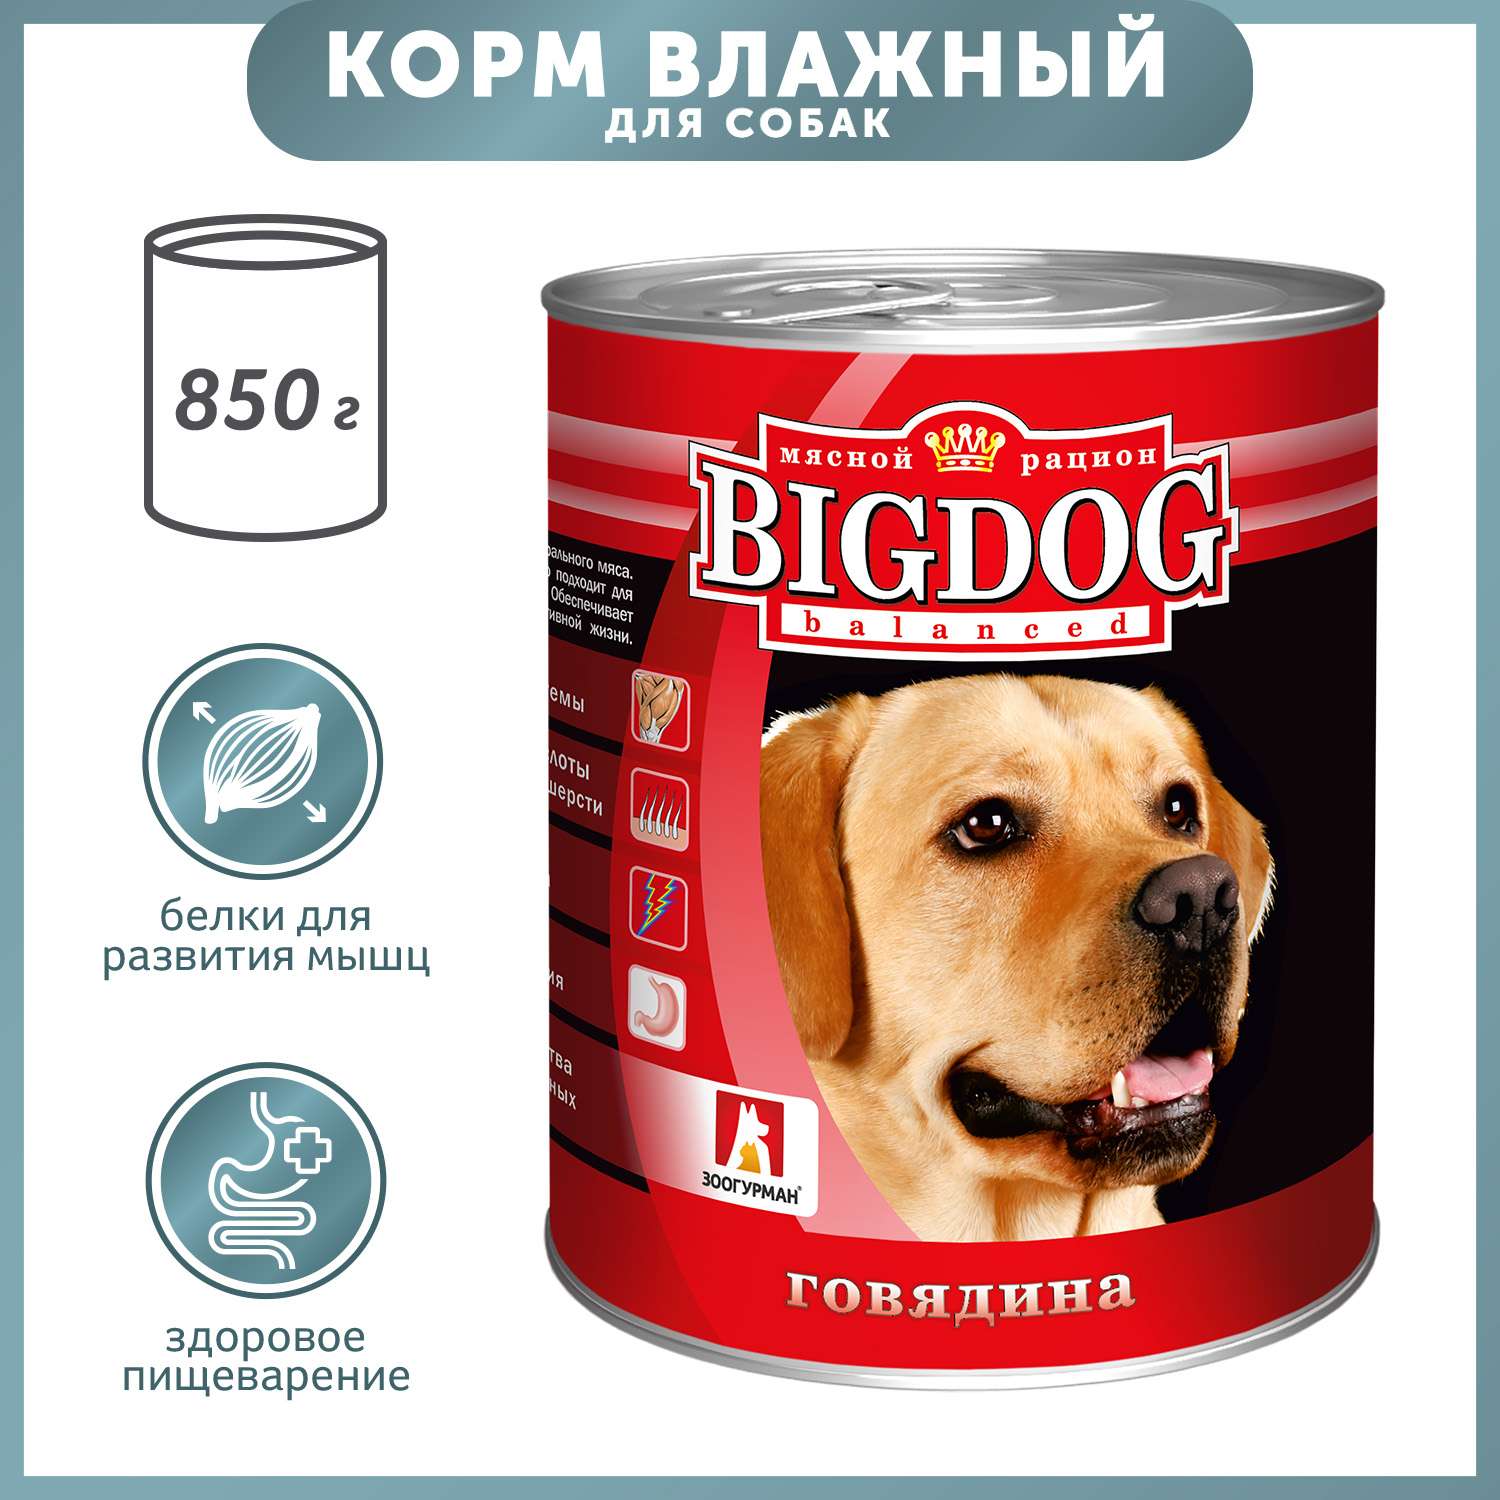 Корм для собак Зоогурман 850г Big Dog говядина ж/б - фото 1